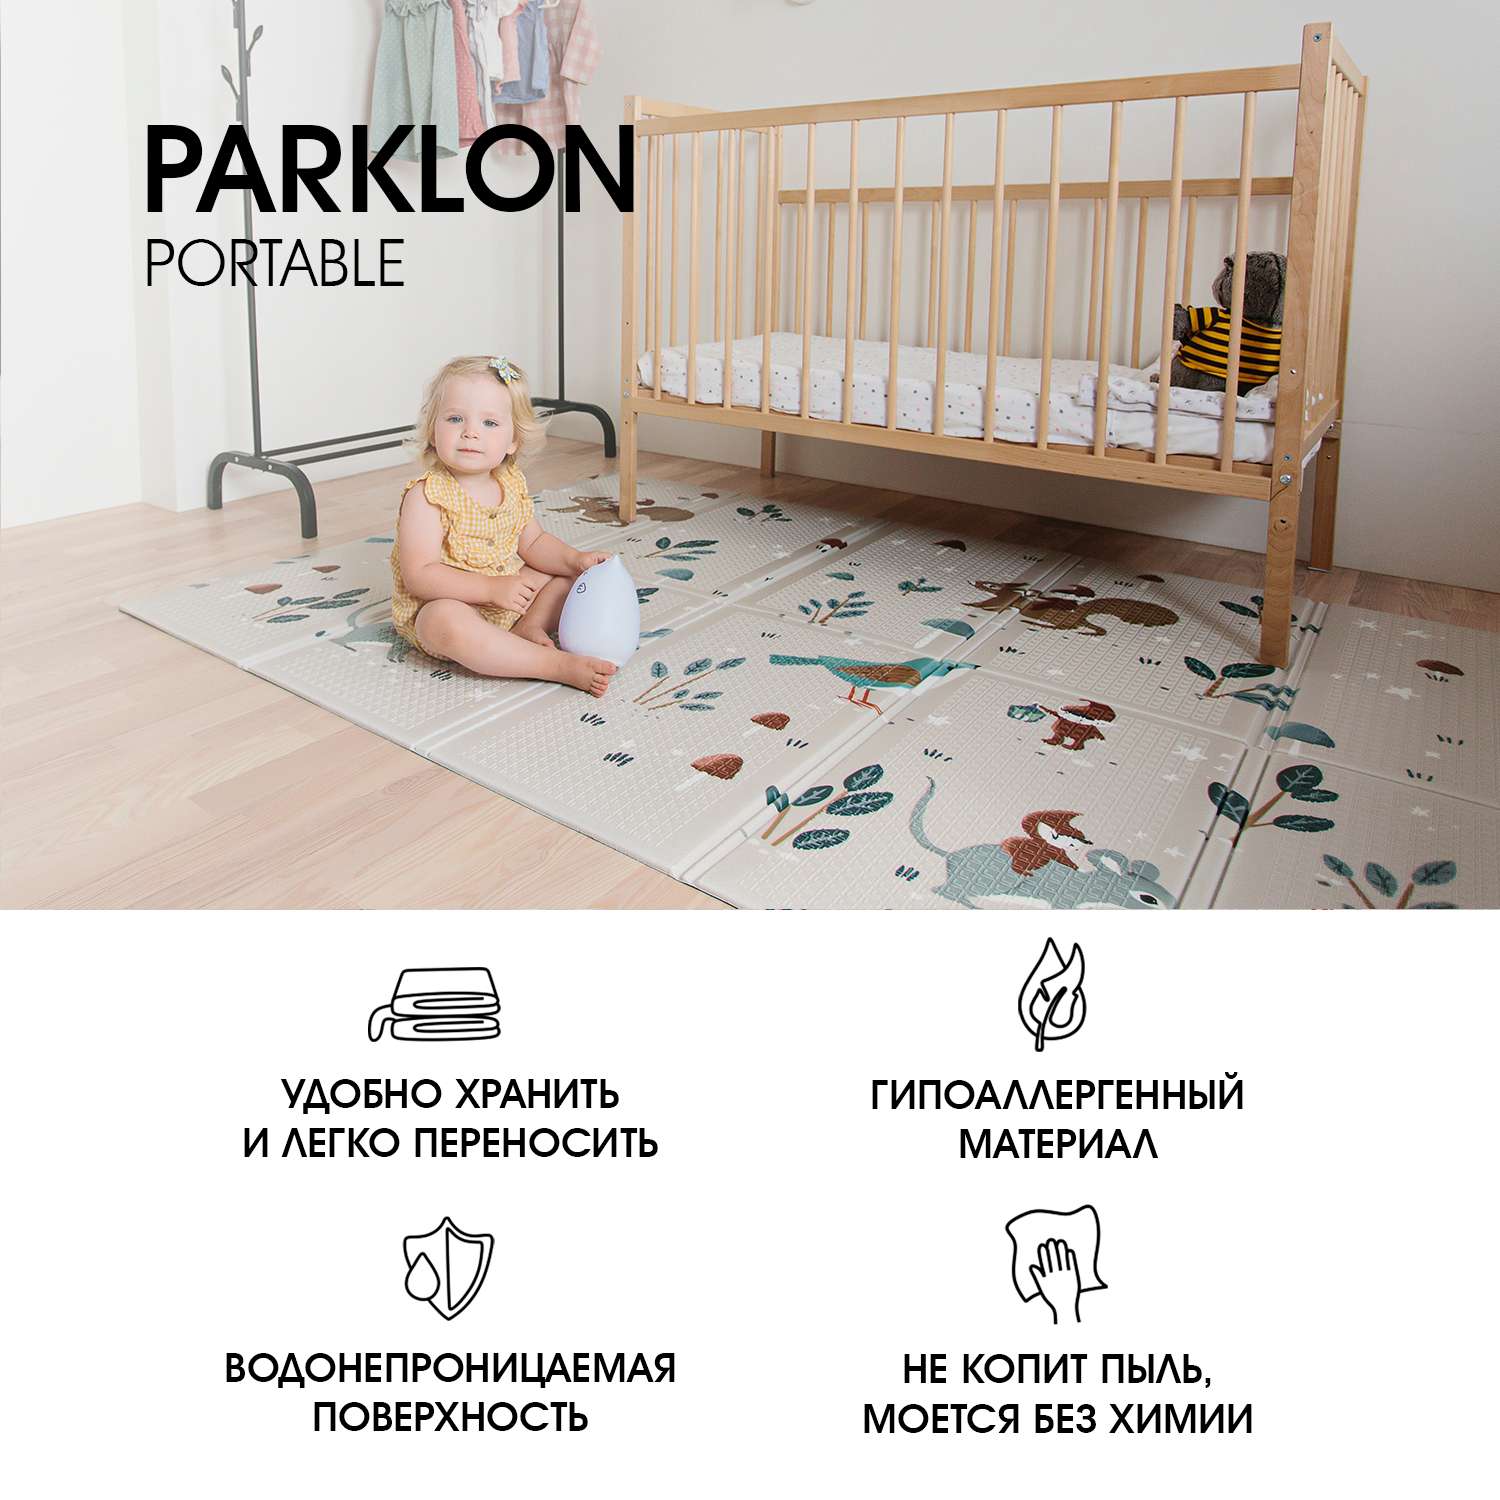 Складной детский коврик PARKLON Portable Милые гномы - фото 9